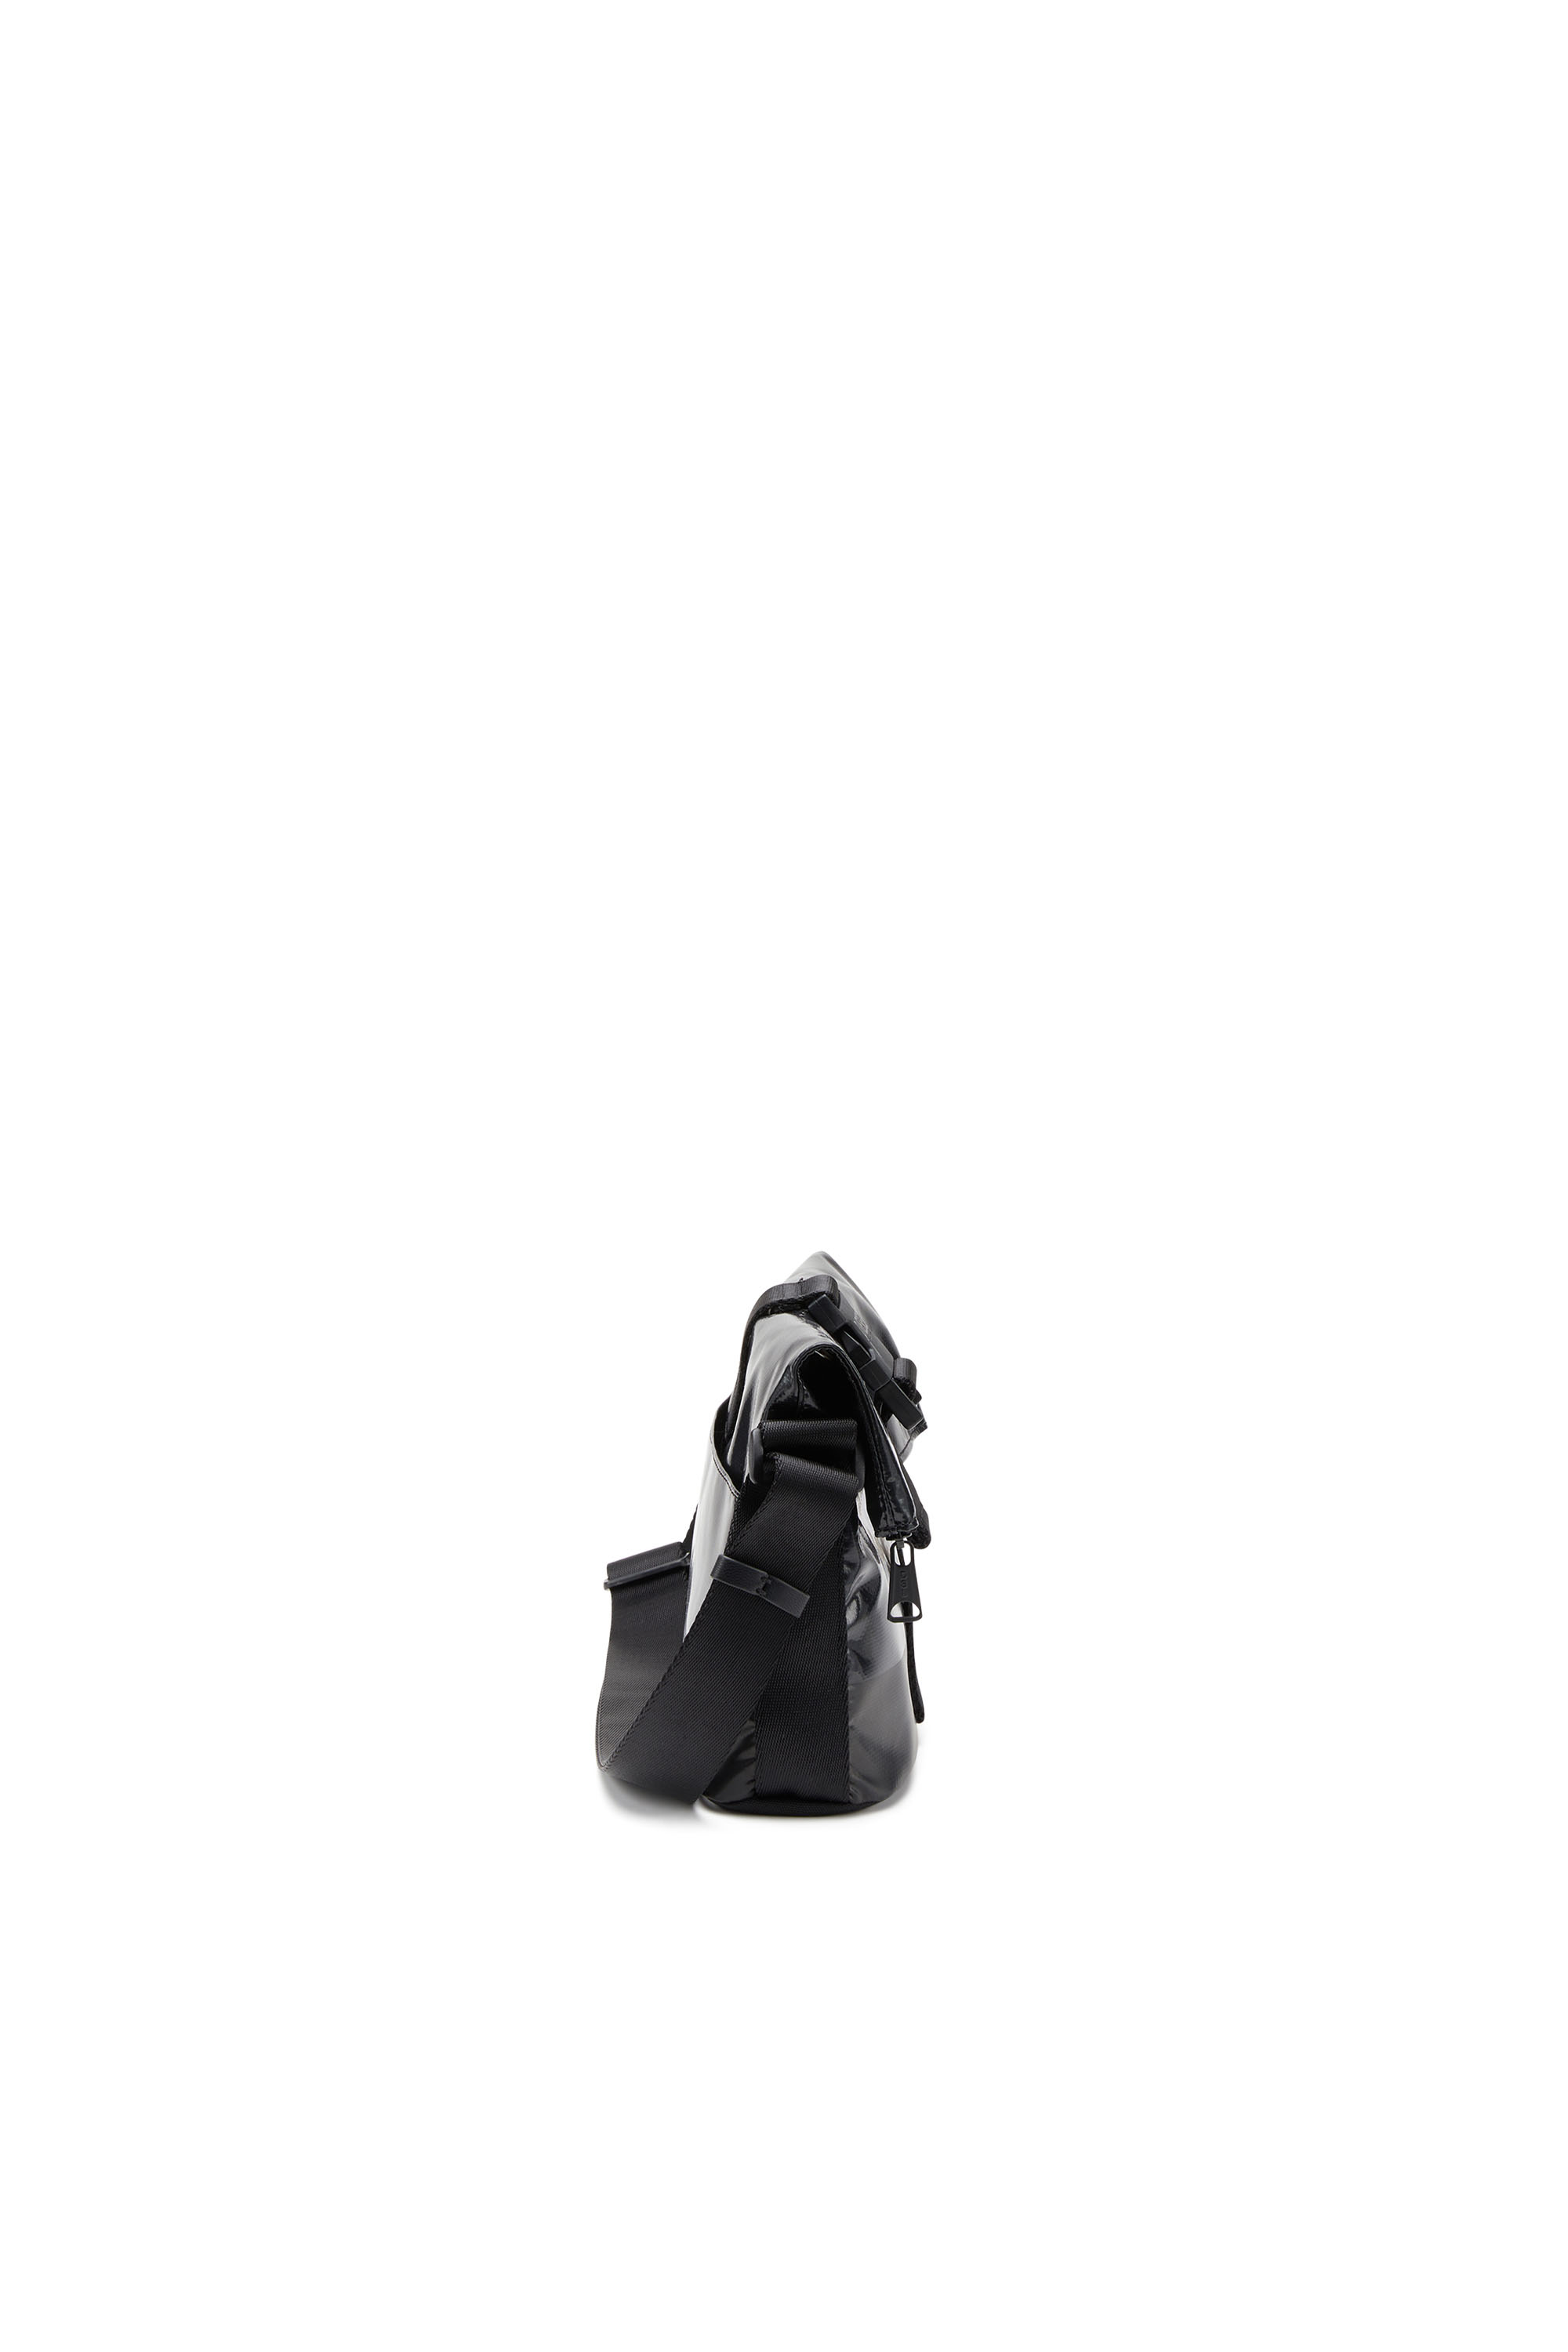 Diesel - TRAP/D SHOULDER BAG S, Black - Image 3